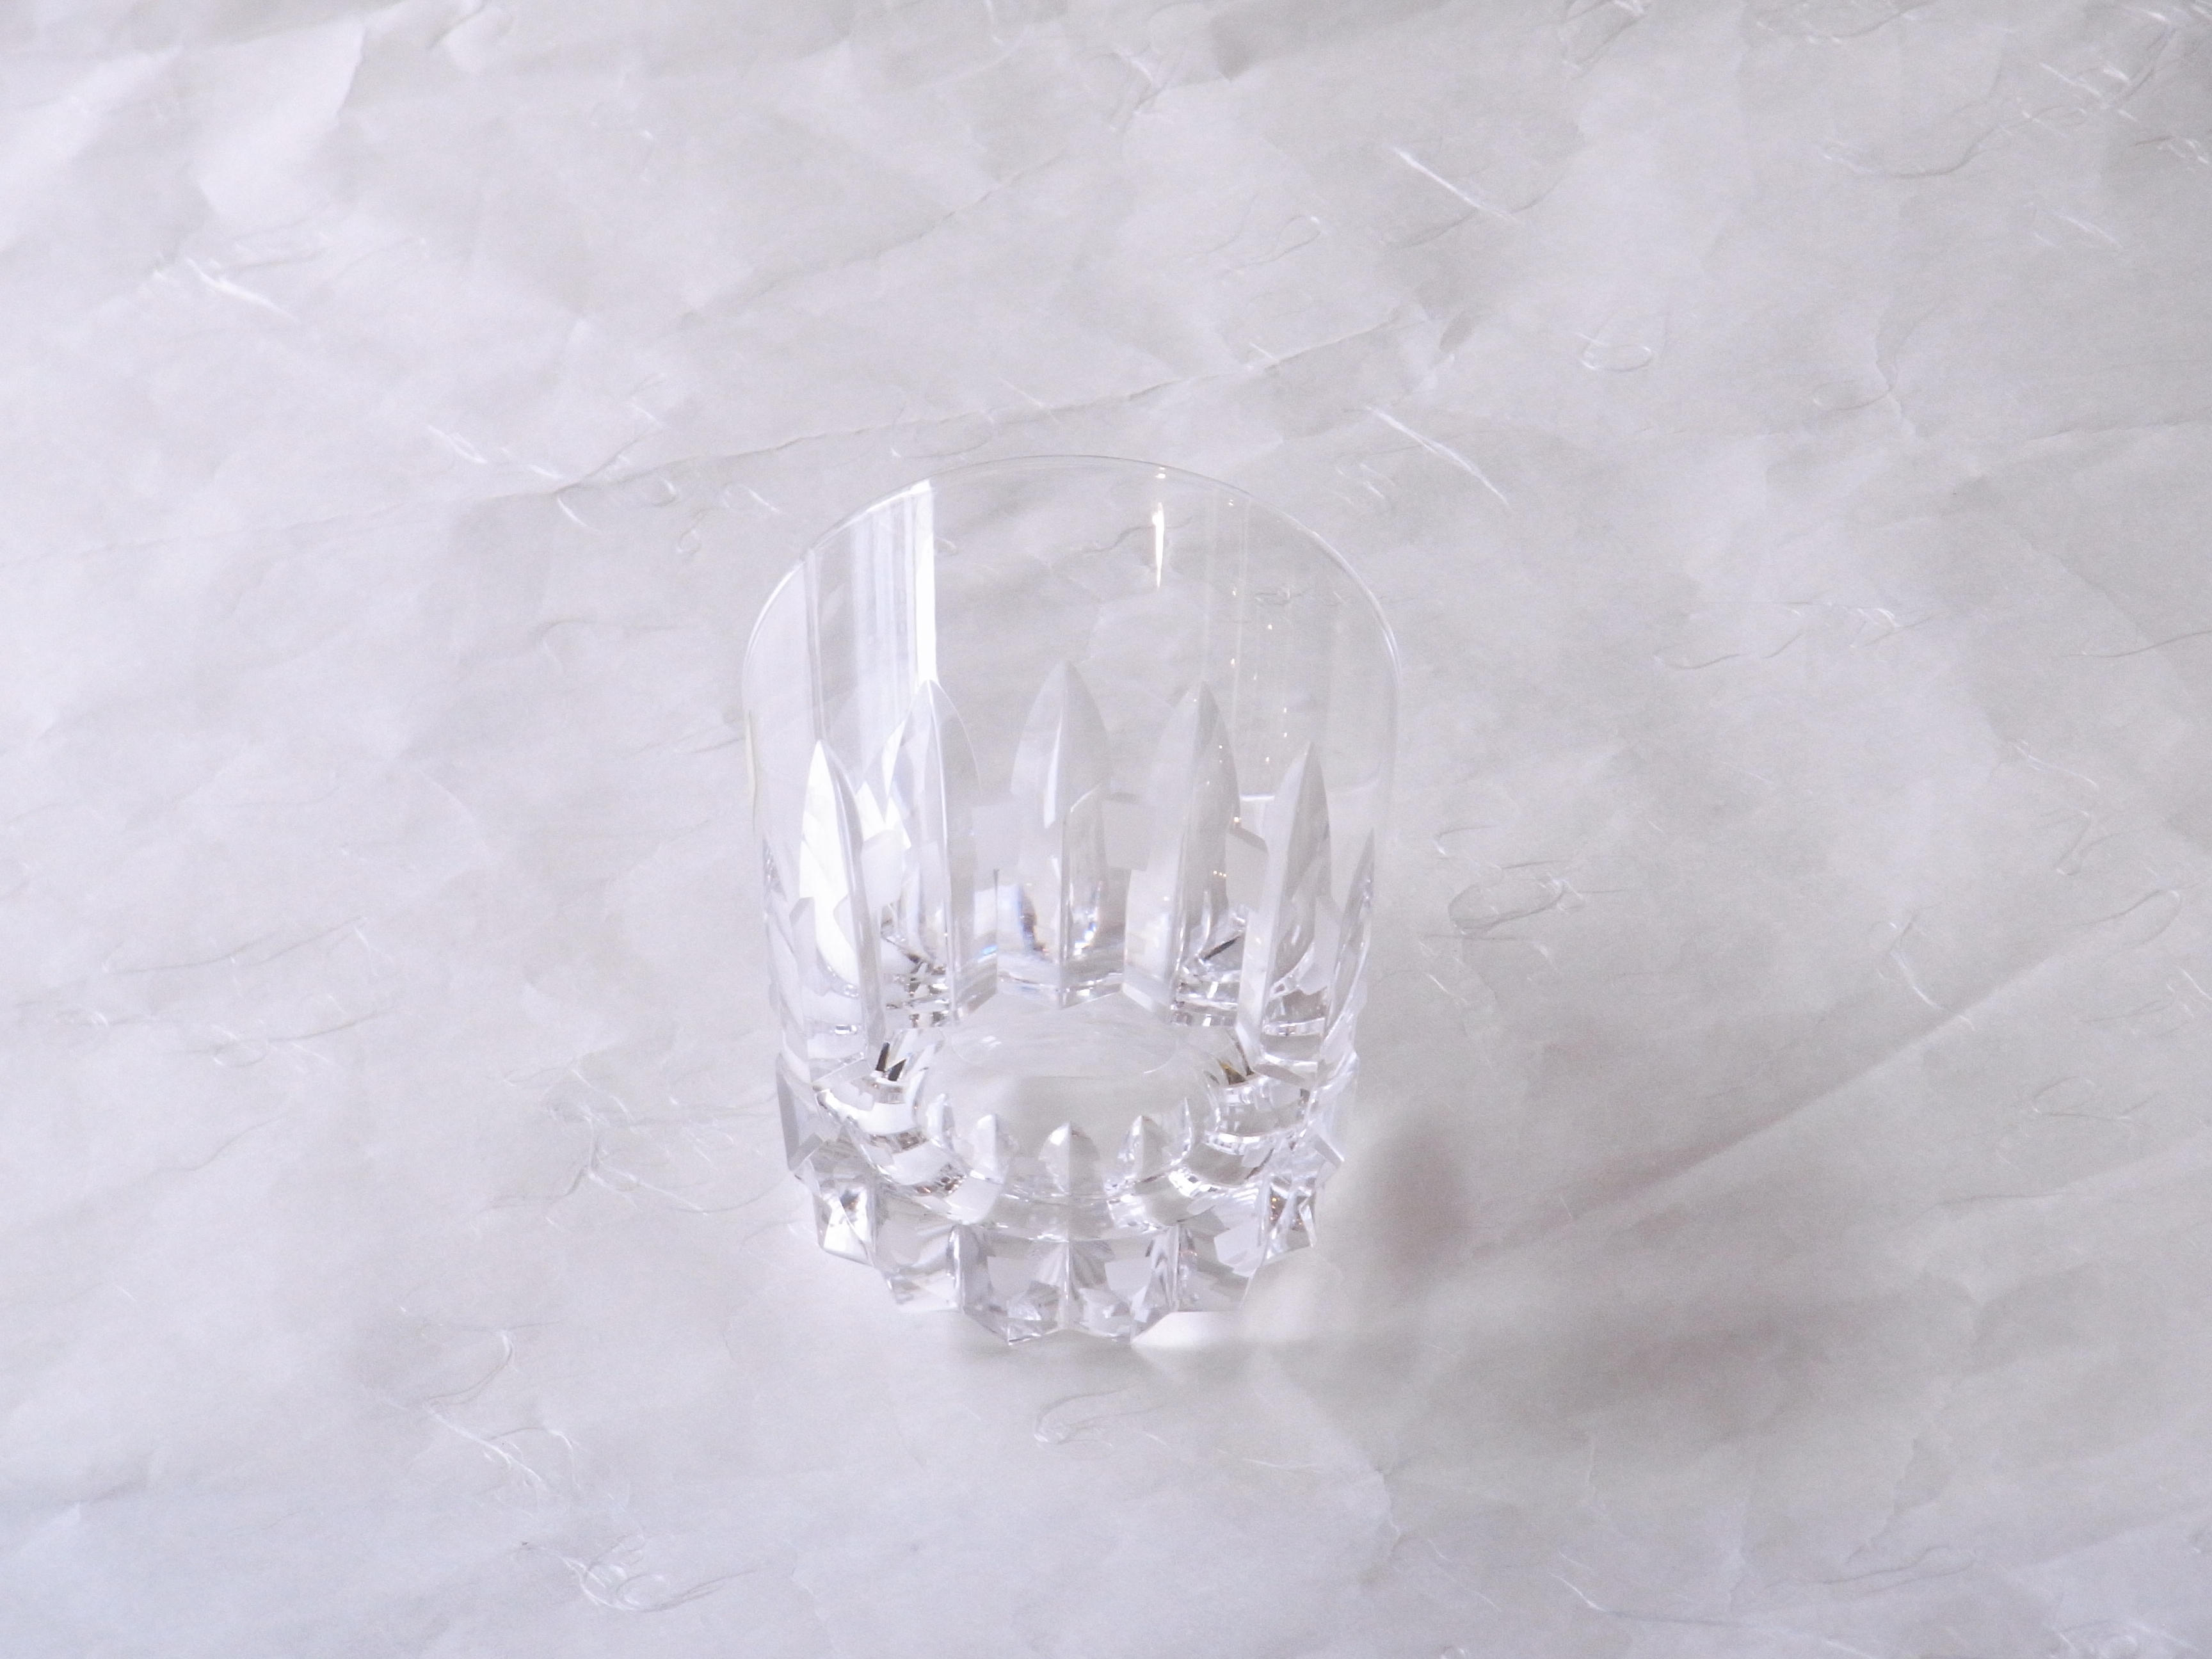 ガラス製品　日本製　ハンドメイド　カット　ロックグラス　クリスタルガラス製　精選された　高純度の原料　高い透明度　美しい輝き　澄んだ音色　酸化鉛　添加　屈折率　水晶のよう　輝く透明なガラス　打音が高い　音色が澄んでいる　余韻が残る　ハンドカット　星のよう　ギザギザ　一部摺りガラス　加工　精巧な作り　江戸切子と同じ工場　高い技術　素材　カット技術にこだわる　透明なグラス　最上級なロックグラス　日本製　陶器　磁器　陶磁器　漆器　茶道具　華道具　贈り物　ギフト　記念品　引出物　法要　お返し　専門店　リアル店舗　茶の湯　茶道　裏千家　表千家　茶会　月釜　抹茶　高品質　安らぎ　いやし　よりおいしく　安心　機能的　長持ち　人気　おすすめ　高機能　ネット通販　ネットショップ　セレクトショップ　欲しい　購入　買う　買い物　岐阜県　岐阜市　美殿町　小林漆陶　特別な　選び抜かれた　品質重視　使いやすい　格安　老舗　誕生日　結婚　出産　入学　退職　母の日　父の日　敬老の日　クリスマス　プレゼント　叙勲　長寿　新築　お祝い　御礼　内祝い　外国土産　海外みやげ　実店舗　創業１００年以上　使うと分かる　職人技 日本一の品揃え　日本一の在庫数　専門店　専門知識　数万点の在庫　百貨店（高島屋　三越　伊勢丹　松坂屋　大丸）にない　手作り　お洒落　高級品　希少価値　上質な器 伝統工芸品　コスパ　お値打ち　お買い得　堅牢　飽きない　永く使える　お気に入り　国産　料理が映える　満足感　豊かな食生活　豊かな食文化　こだわりの器　日本文化　他にない　ここにしかない　オリジナル　独自の　個性的　ここでしか買えない　超レアもの　一品もの　現品限り　入手困難　いい器　匠の技　美しい　実用的　外人が喜ぶ店　外人が珍しがる店　外人がうれしい店　日本各地の一級品を売る店　日本全国の器を売る店　本当にいいもの コスパ高い　一流品　修理　選りすぐりの逸品　周年記念　永年勤続表彰　退職記念　卒業記念　日本土産　岐阜土産　岐阜のおみやげ　岐阜の特産品　料理を引き立てる器　高級店　一流店　岐阜で一番　東海で一番　中部で一番　日本で一番　おしゃれな店　地域一番店　実店舗　陶磁器　磁器　華道具　ガラス器　明治４２年創業　有田焼　清水焼　美濃焼　赤津焼　万古焼　常滑焼　九谷焼　唐津焼　萩焼　信楽焼　万古焼　砥部焼　備前焼　丹波焼　山中塗　春慶塗　讃岐塗　越前塗　輪島塗　紀州塗　会津塗　小田原木工　桜皮細工　秋田杉　駿河竹細工　七宝焼　南部鉄器　錫製品　江戸切子　津軽びいどろ